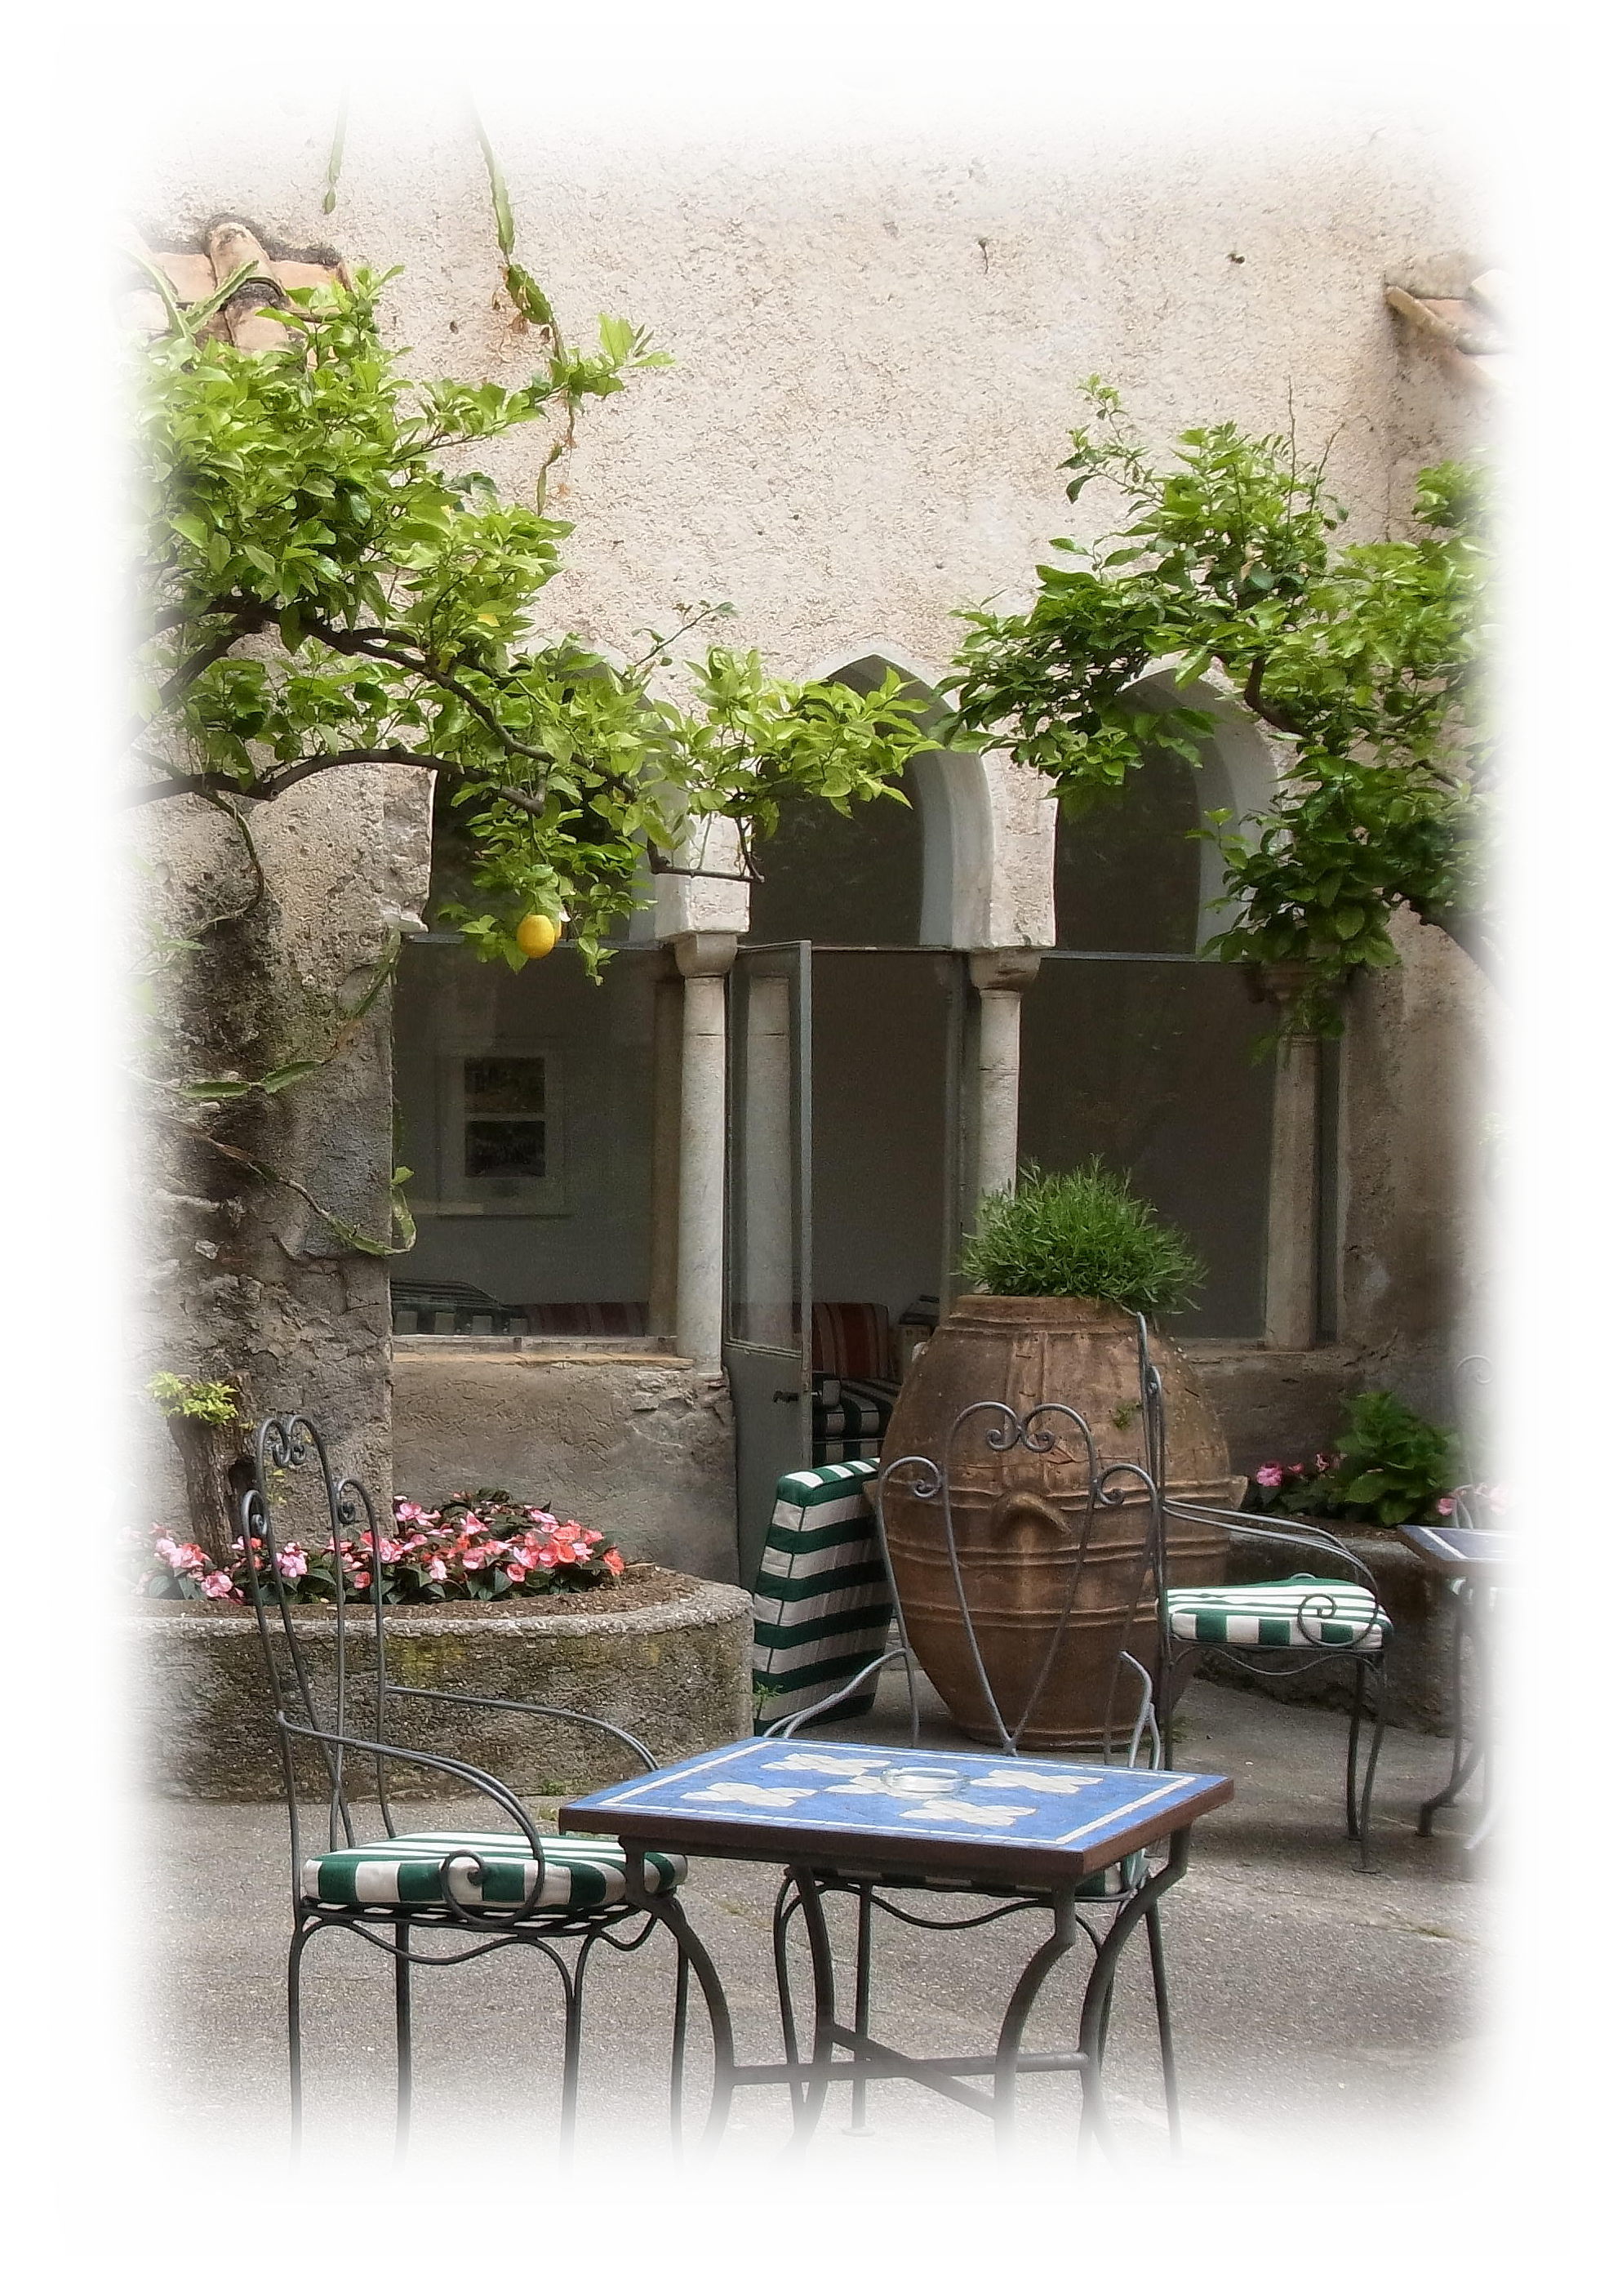 ホテル ルナ コンヴェント内に作られたムーア様式の回廊庭園中央には井戸がある。